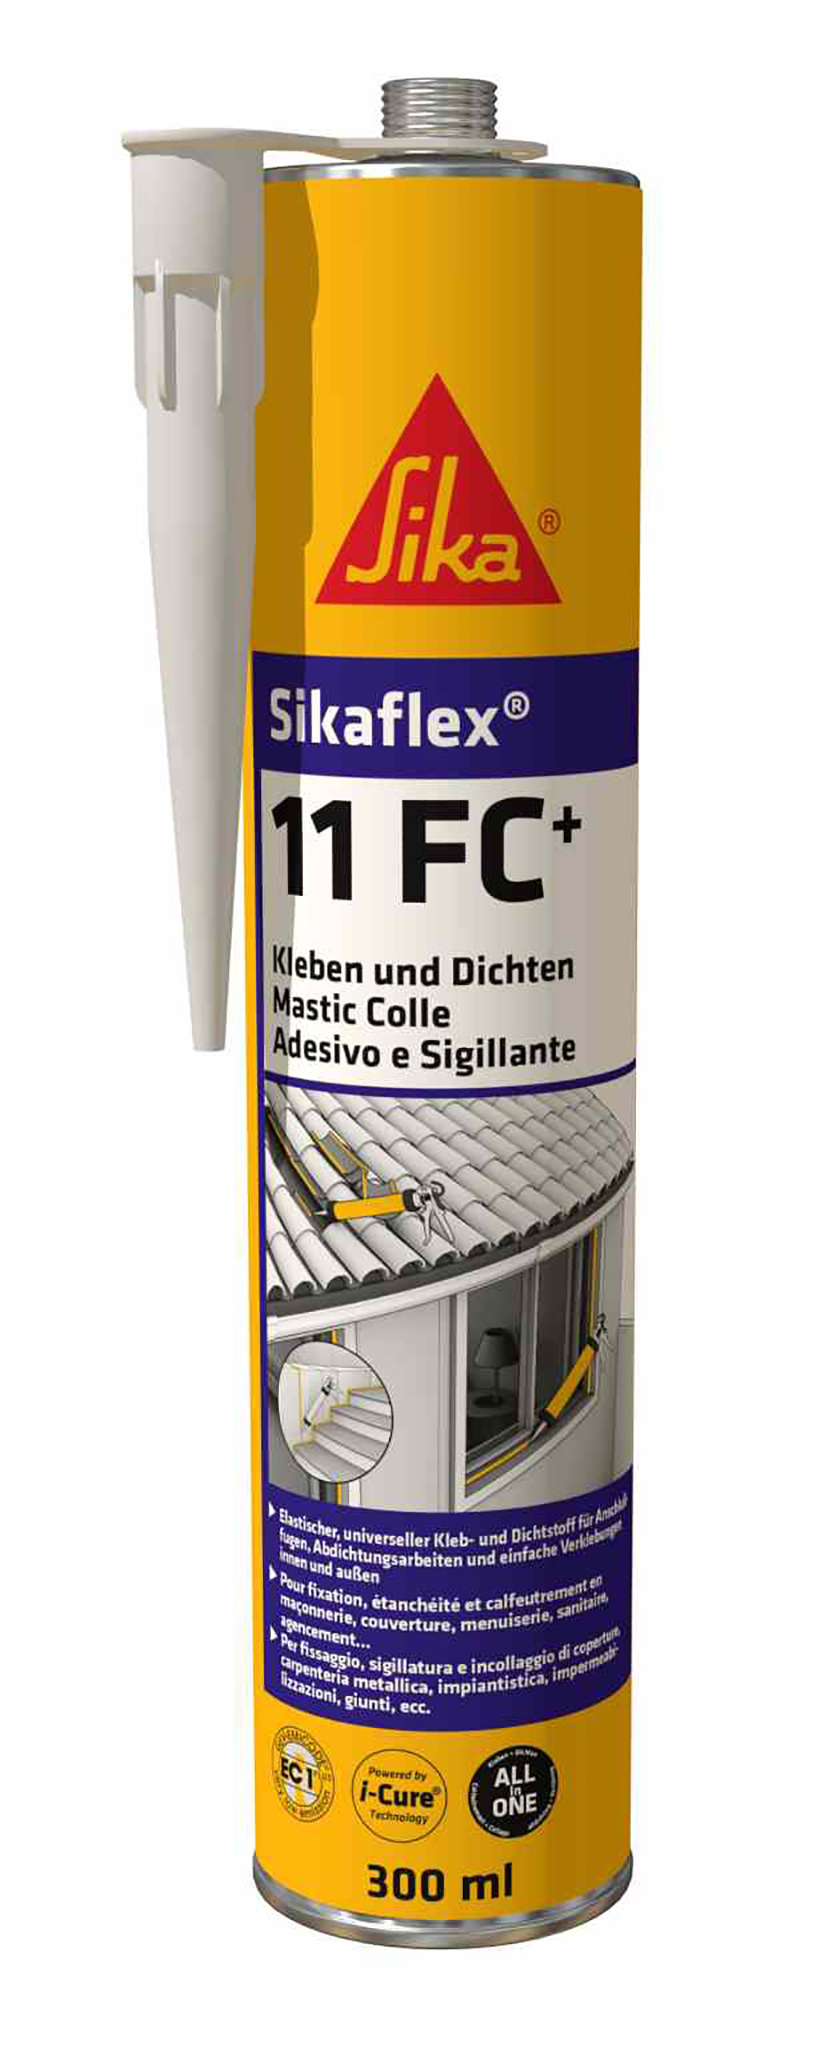 Sikaflex 11 FC Purform universell elastisch Kleben und Dichten Kartusche 300ml